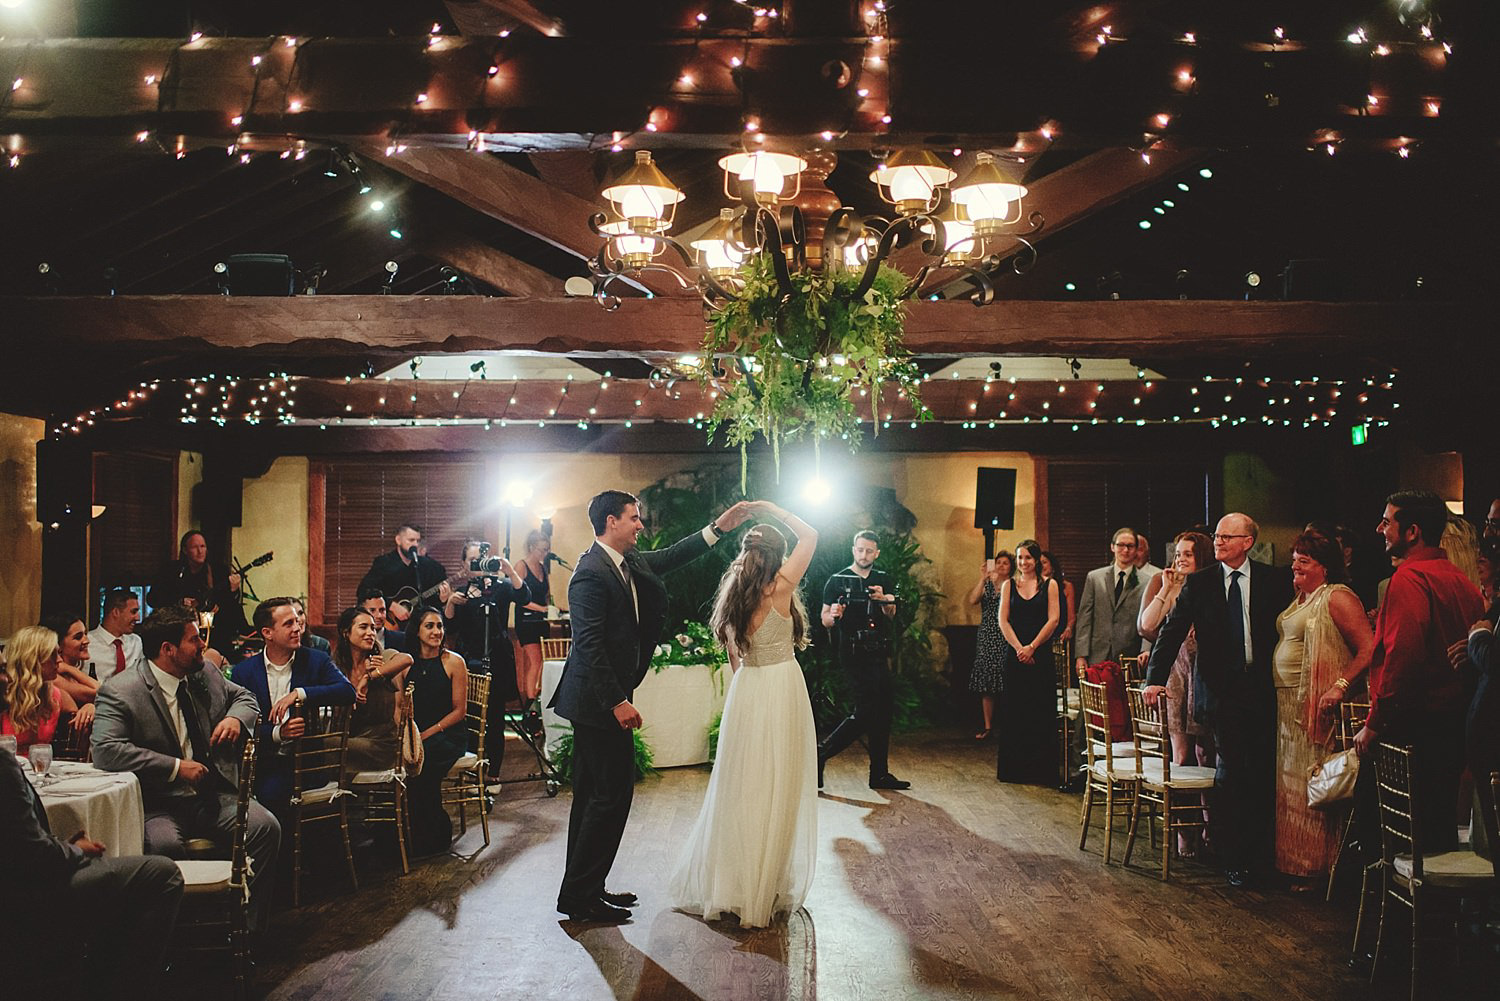 dubsbread wedding reception:  groom twirling bride